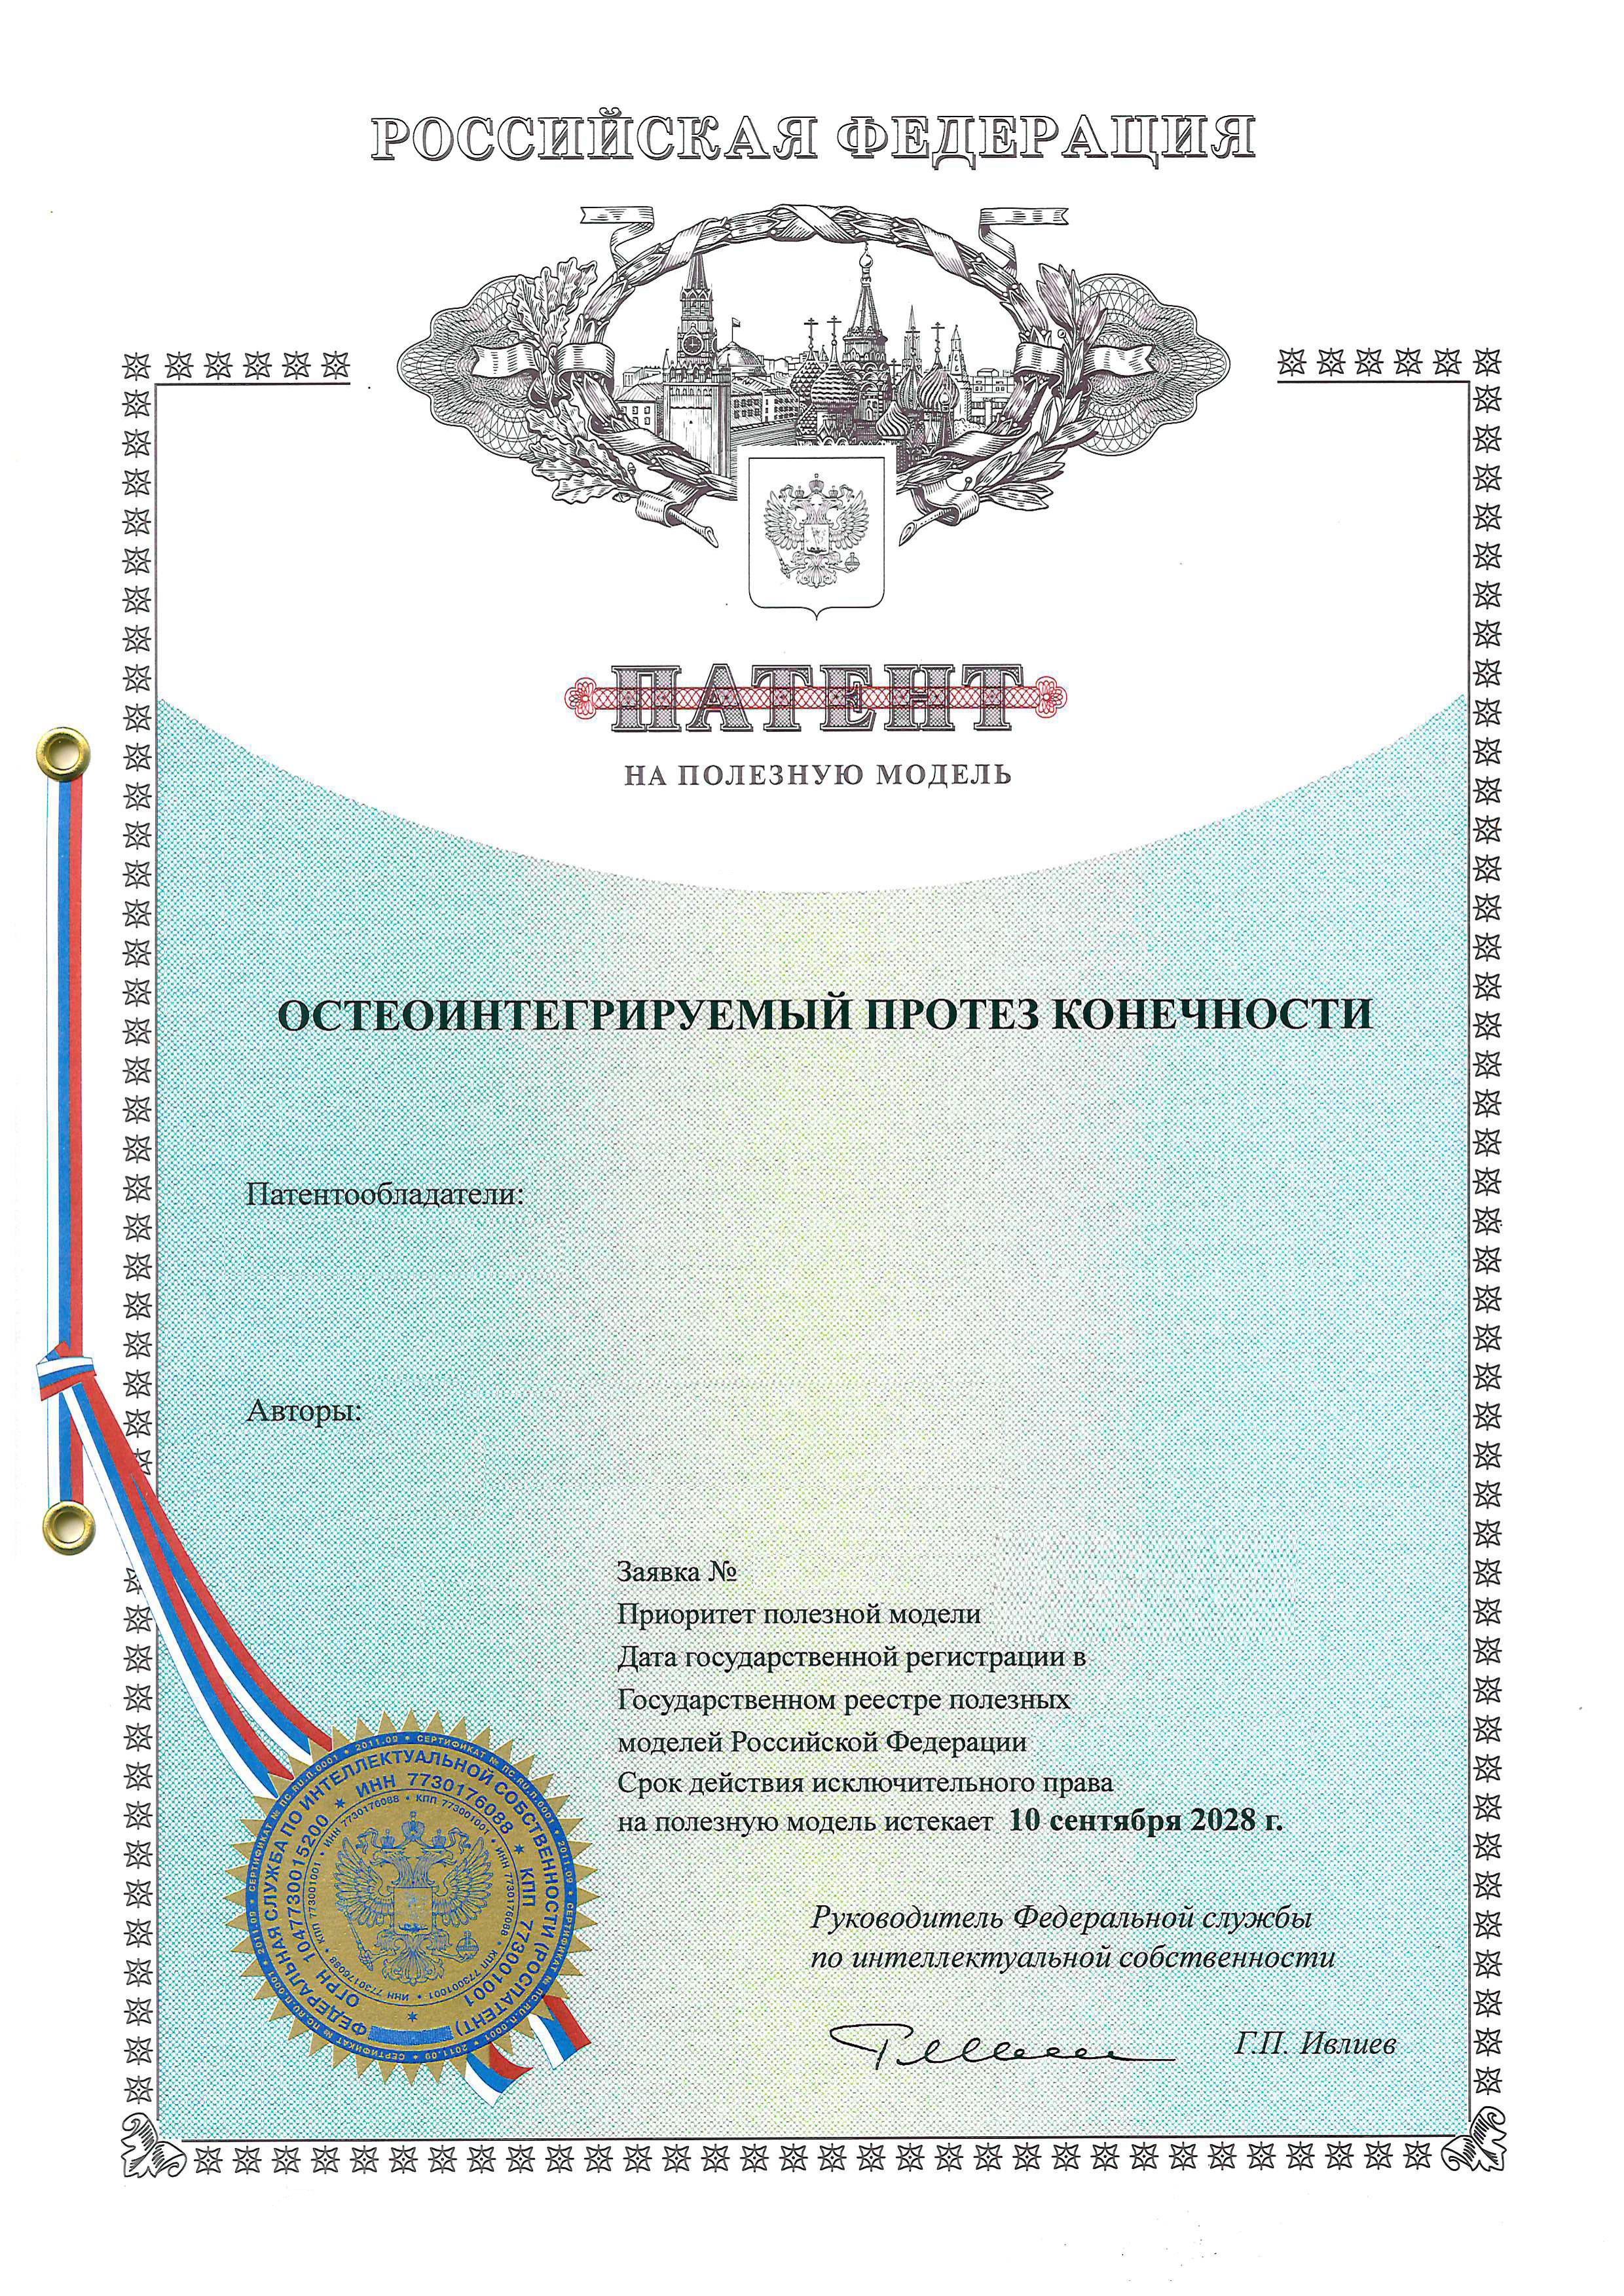 Патент на полезную модель в Новосибирске